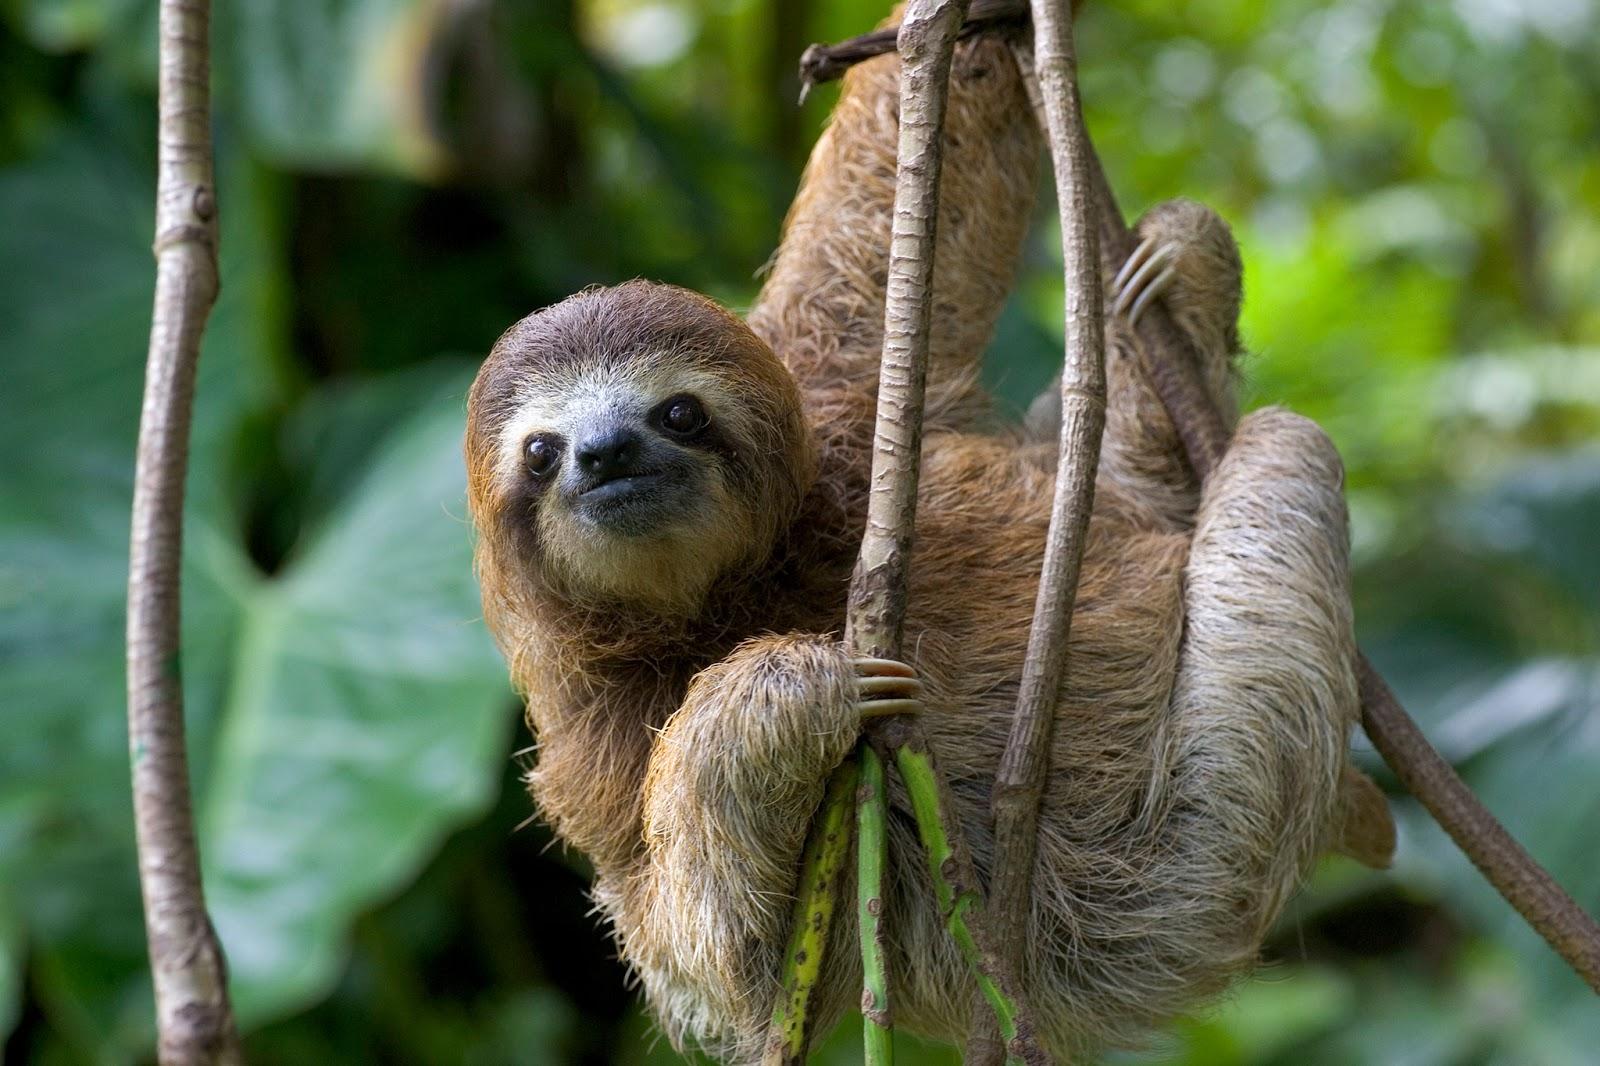 Such a cute sloth!